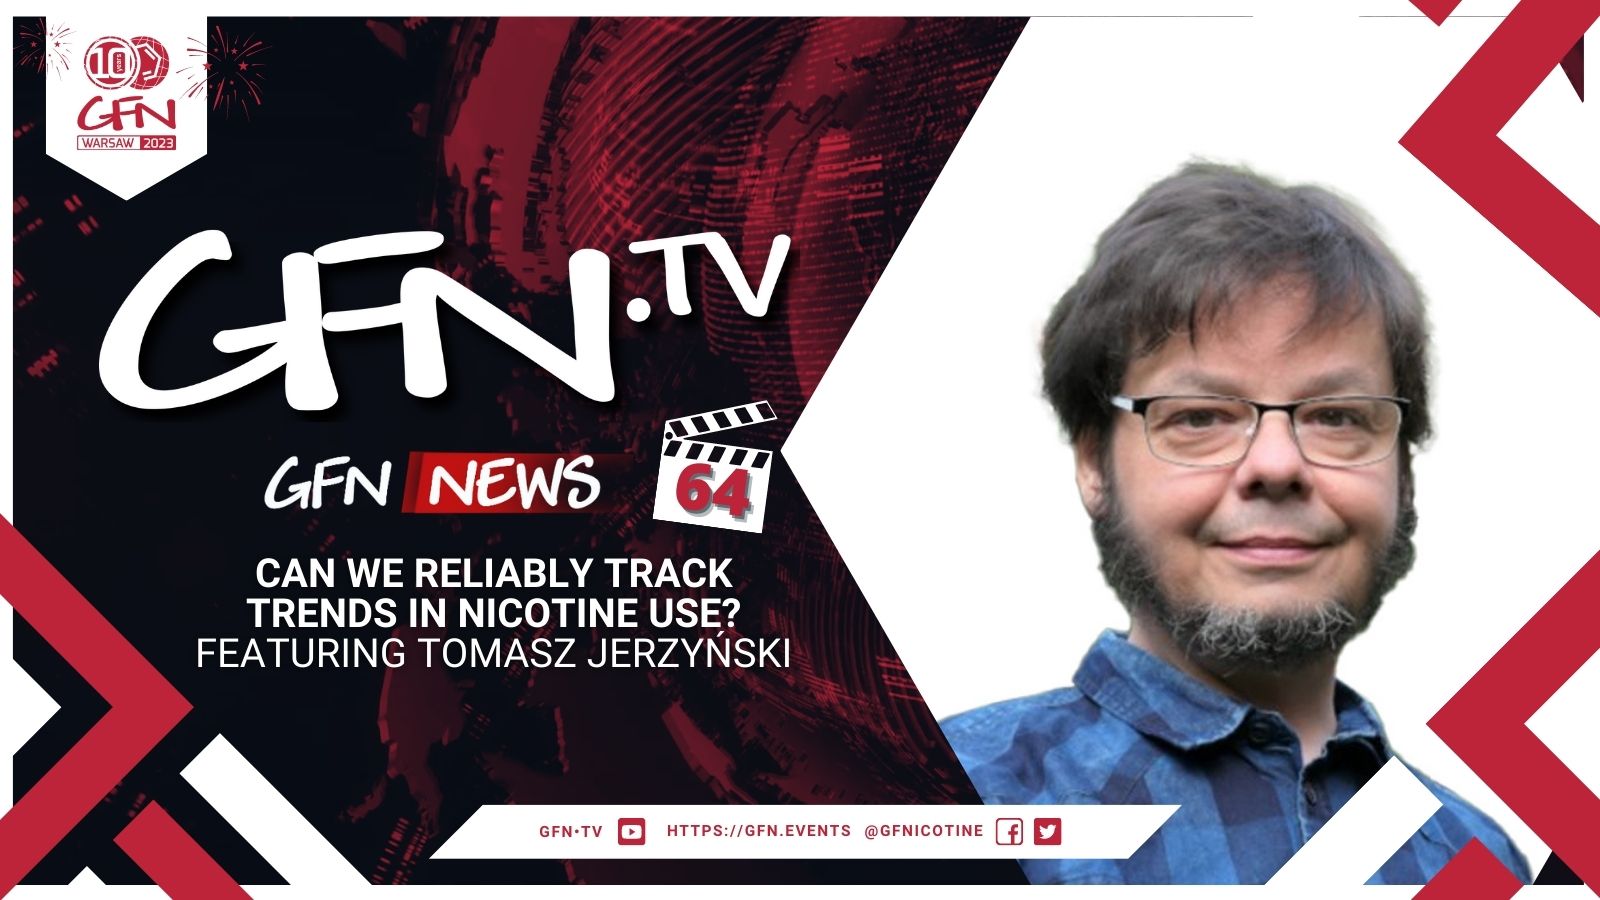 GFN News #64 | CAN WE RELIABLY TRACK TRENDS IN NICOTINE USE? | Featuring Tomasz Jerzyński